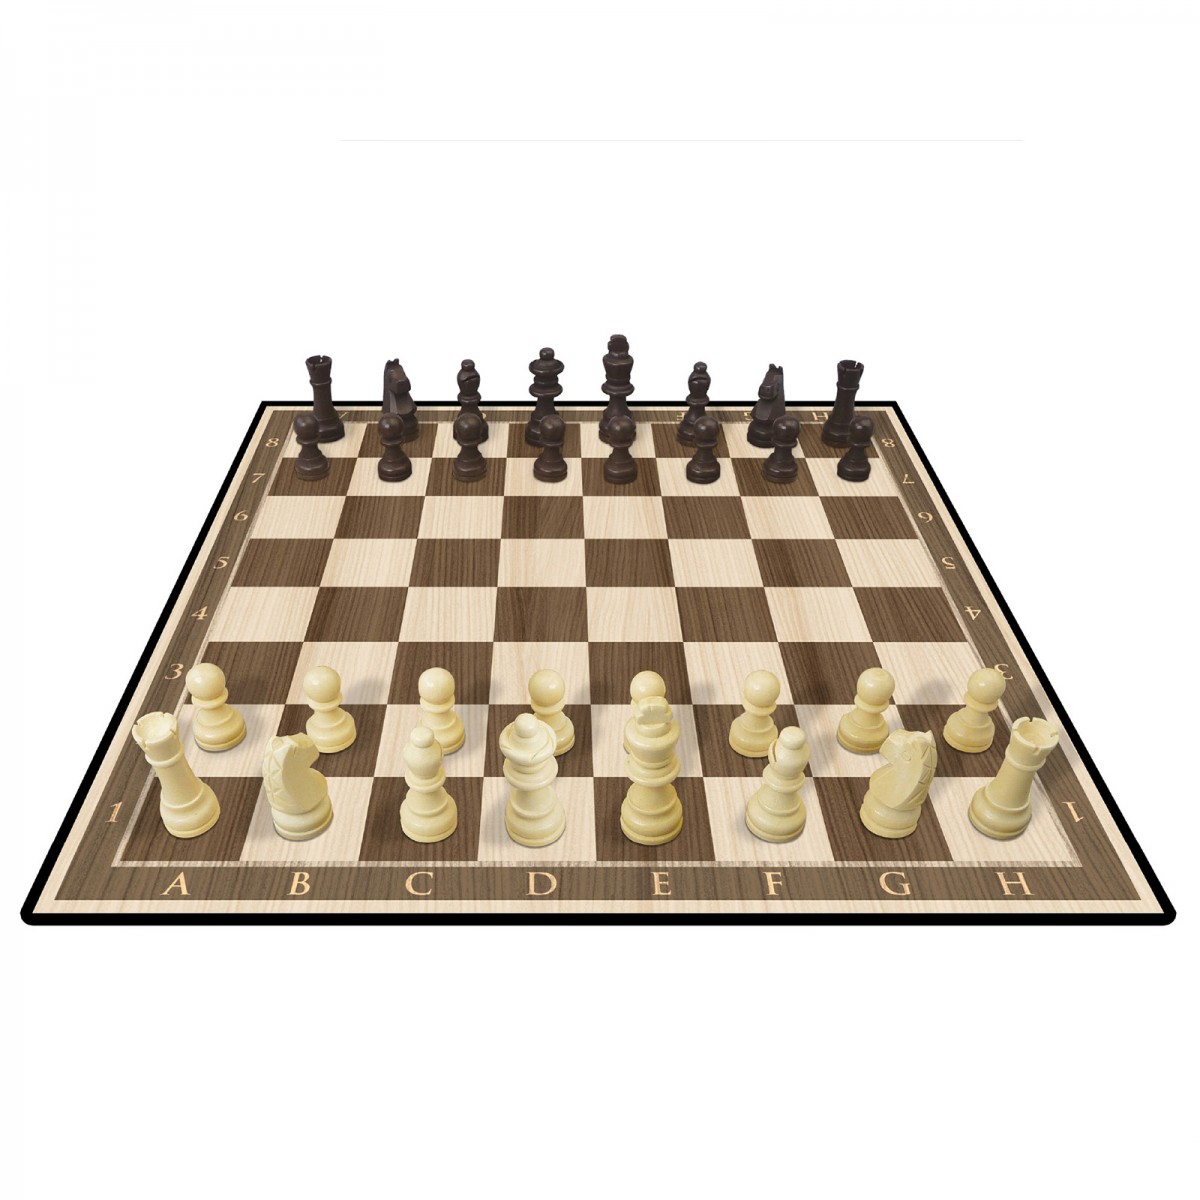 kasparov chess set